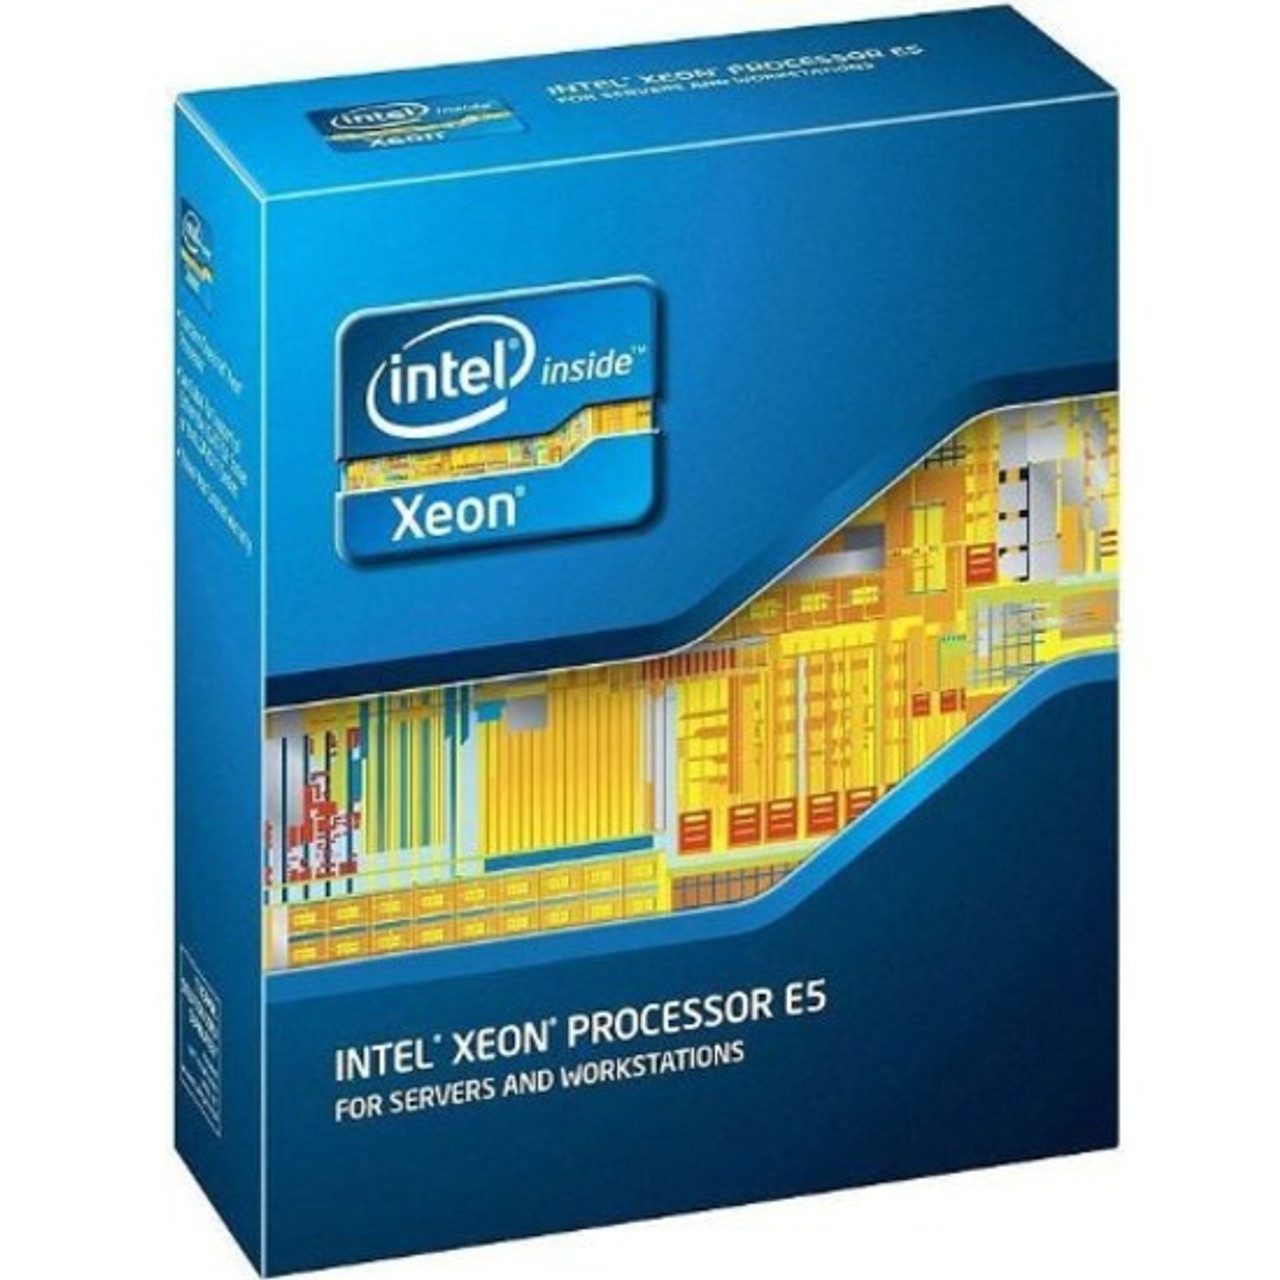 Intel Xeon E5-2609 v2 Quad-core (4 Core) 2.50 GHz Processor - Retail Pack - E5-2609V2